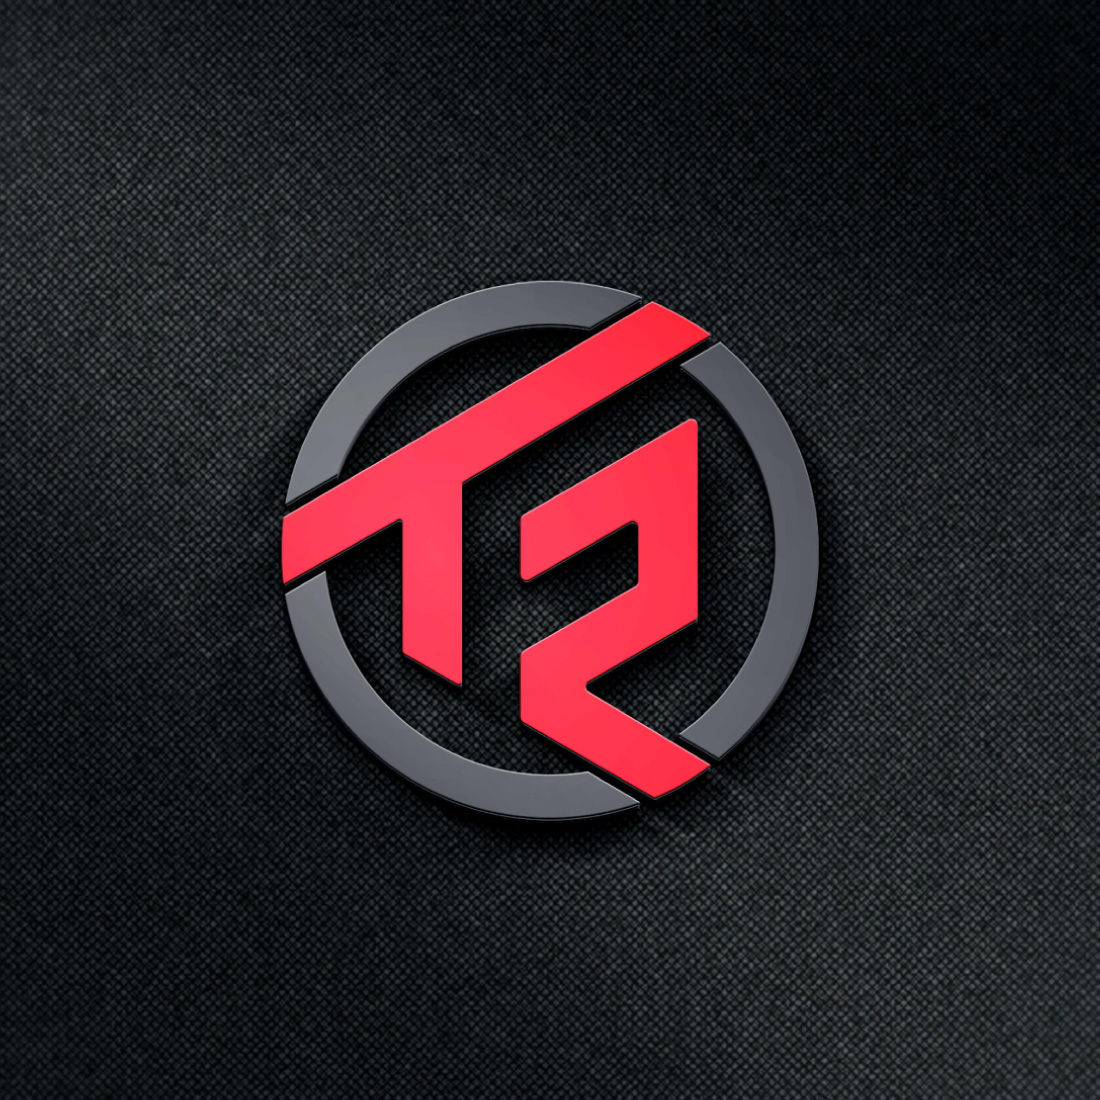 TR logo Design cover image.